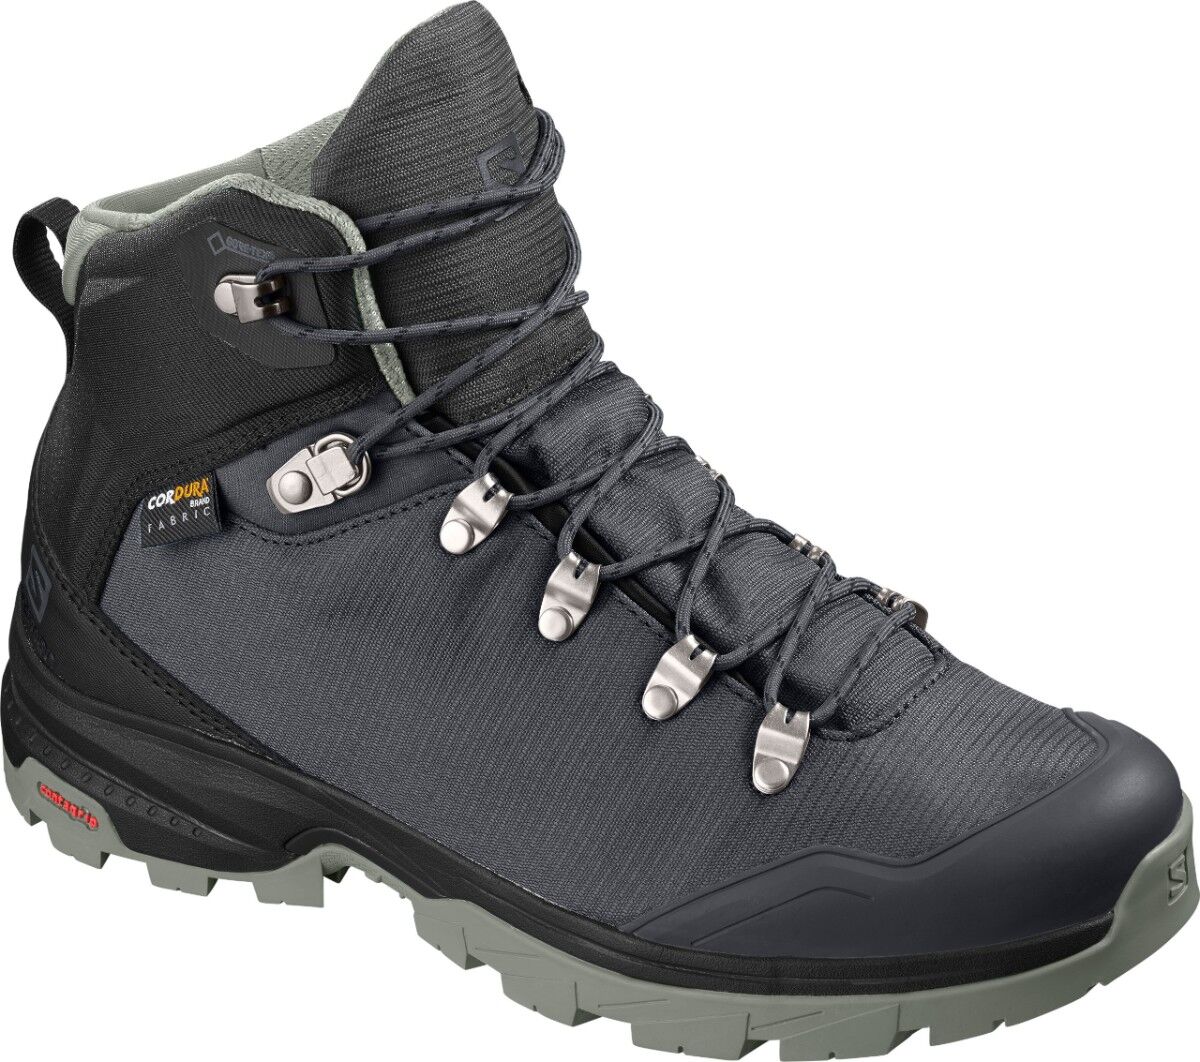 Salomon - Outback 500 GTX W - Walking Boots - Women's